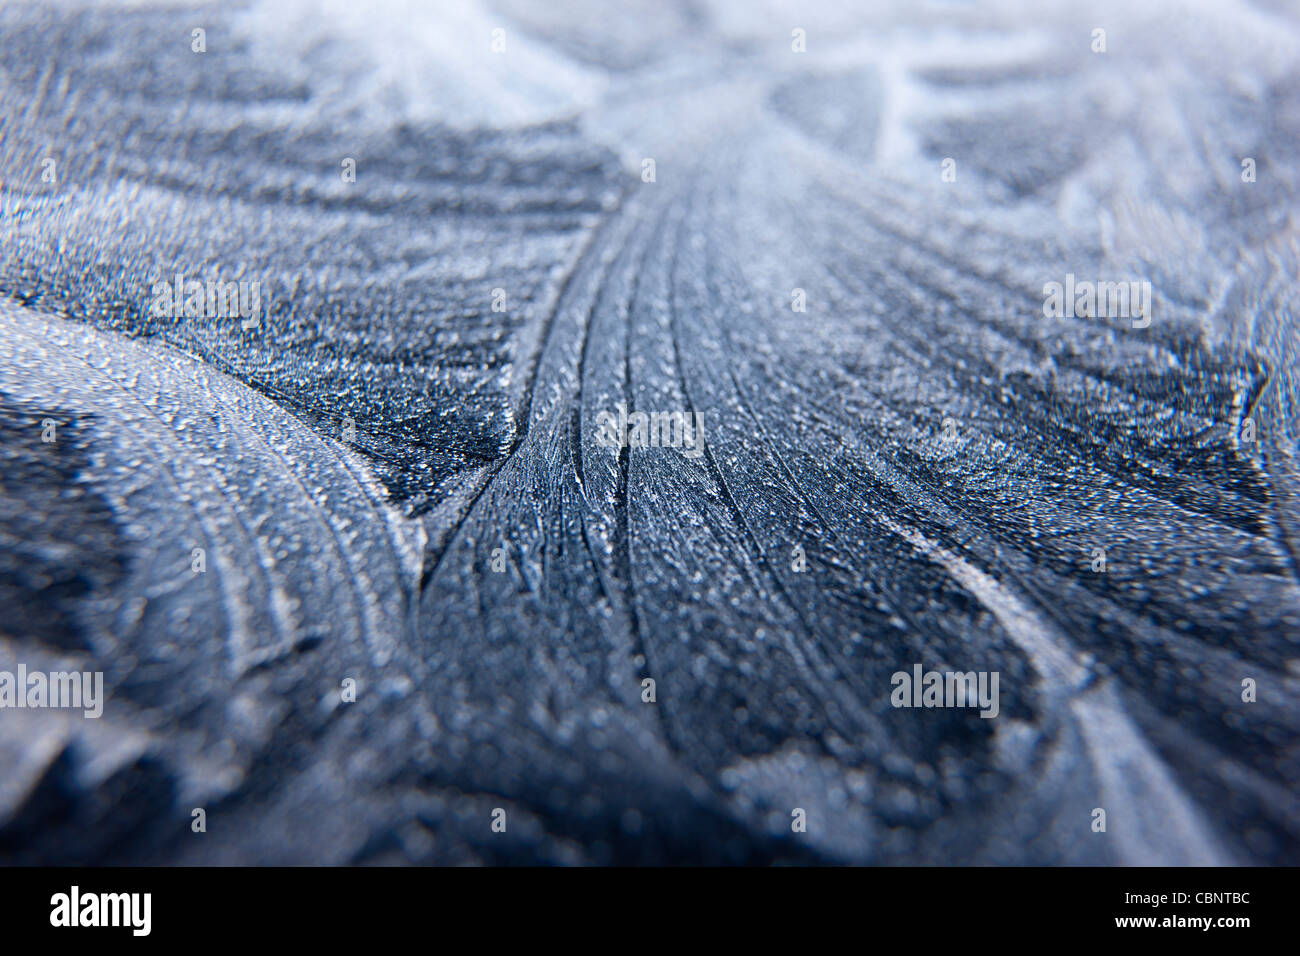 Se produisant des cristaux de glace solide inorganique cristallins du givre sur une vitre opaque transparent de l'eau congelée Banque D'Images